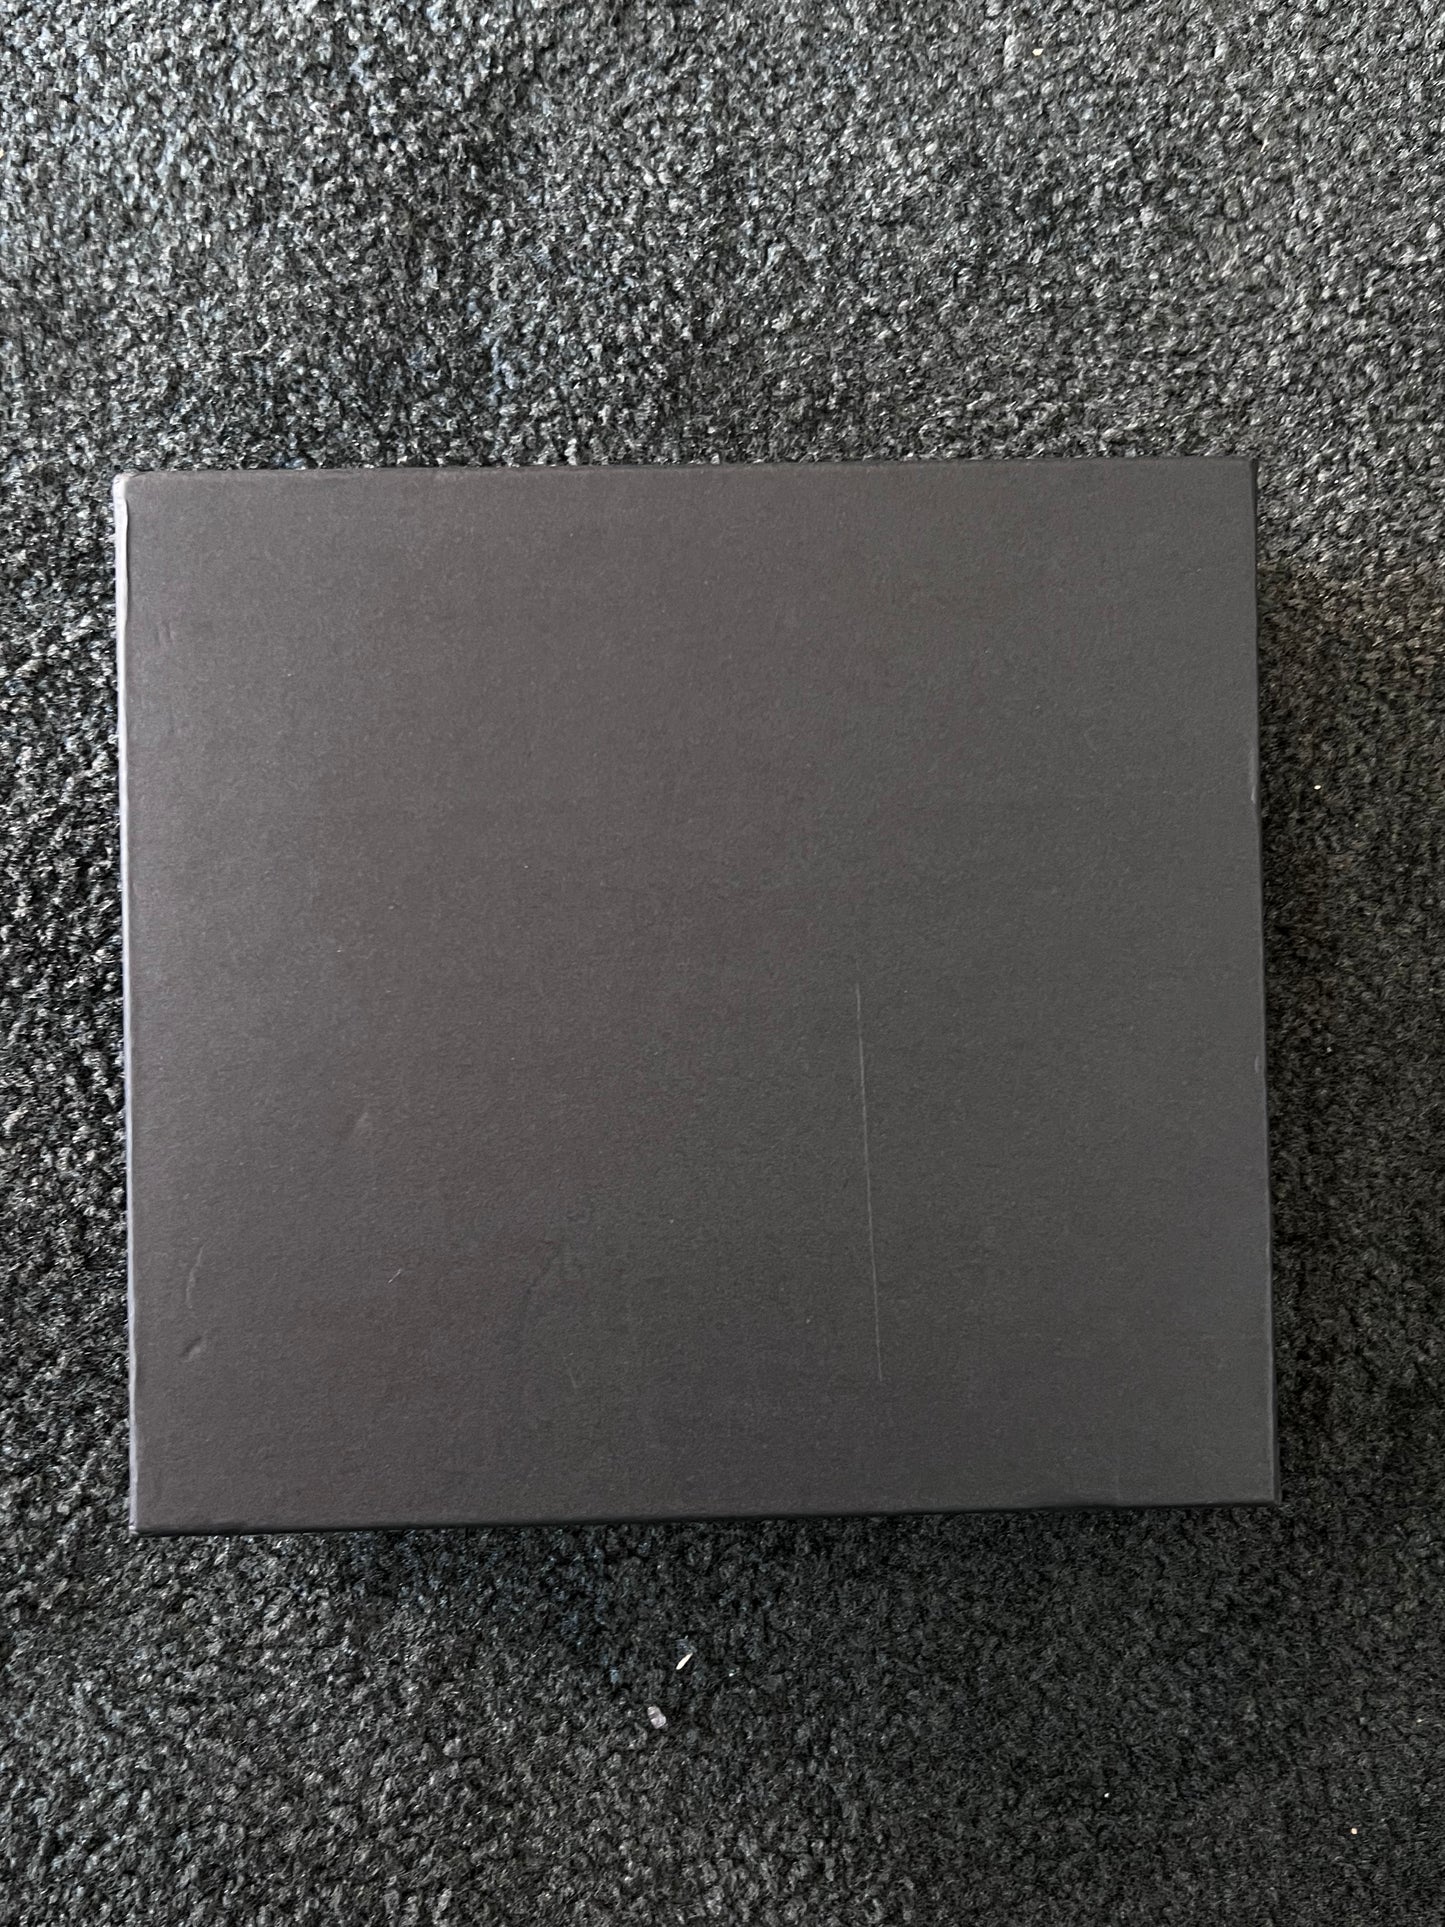 B STOCK Slip in Album 4x6 Black (5 PCS)